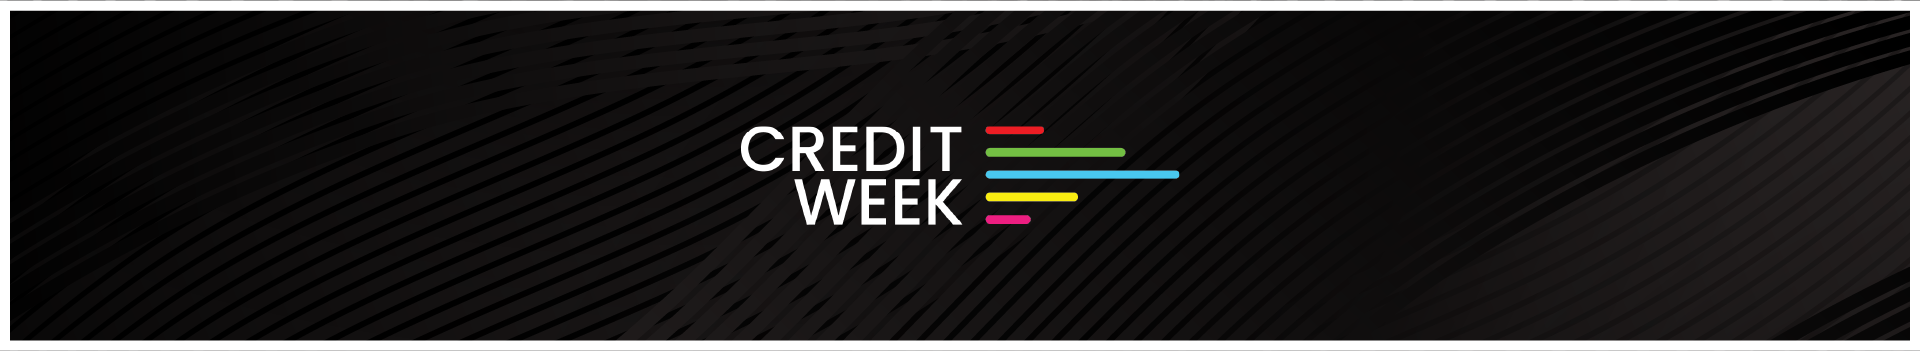 Credit Week